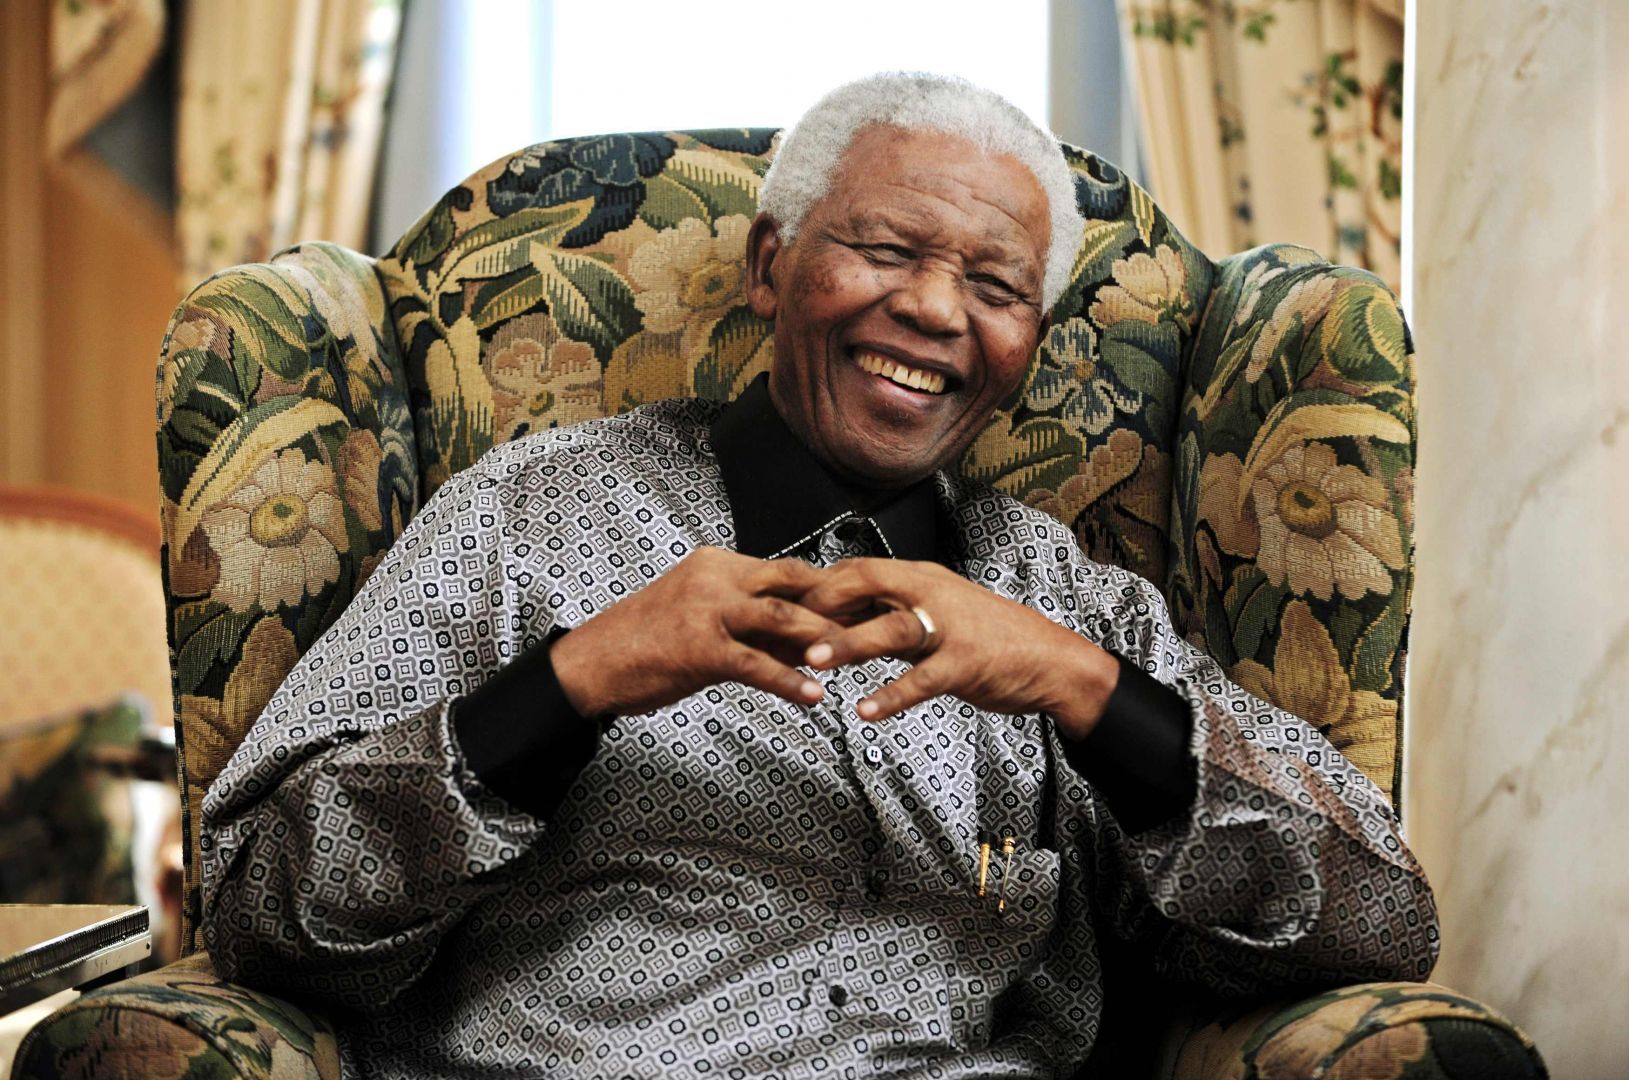 Nelson Mandela. 